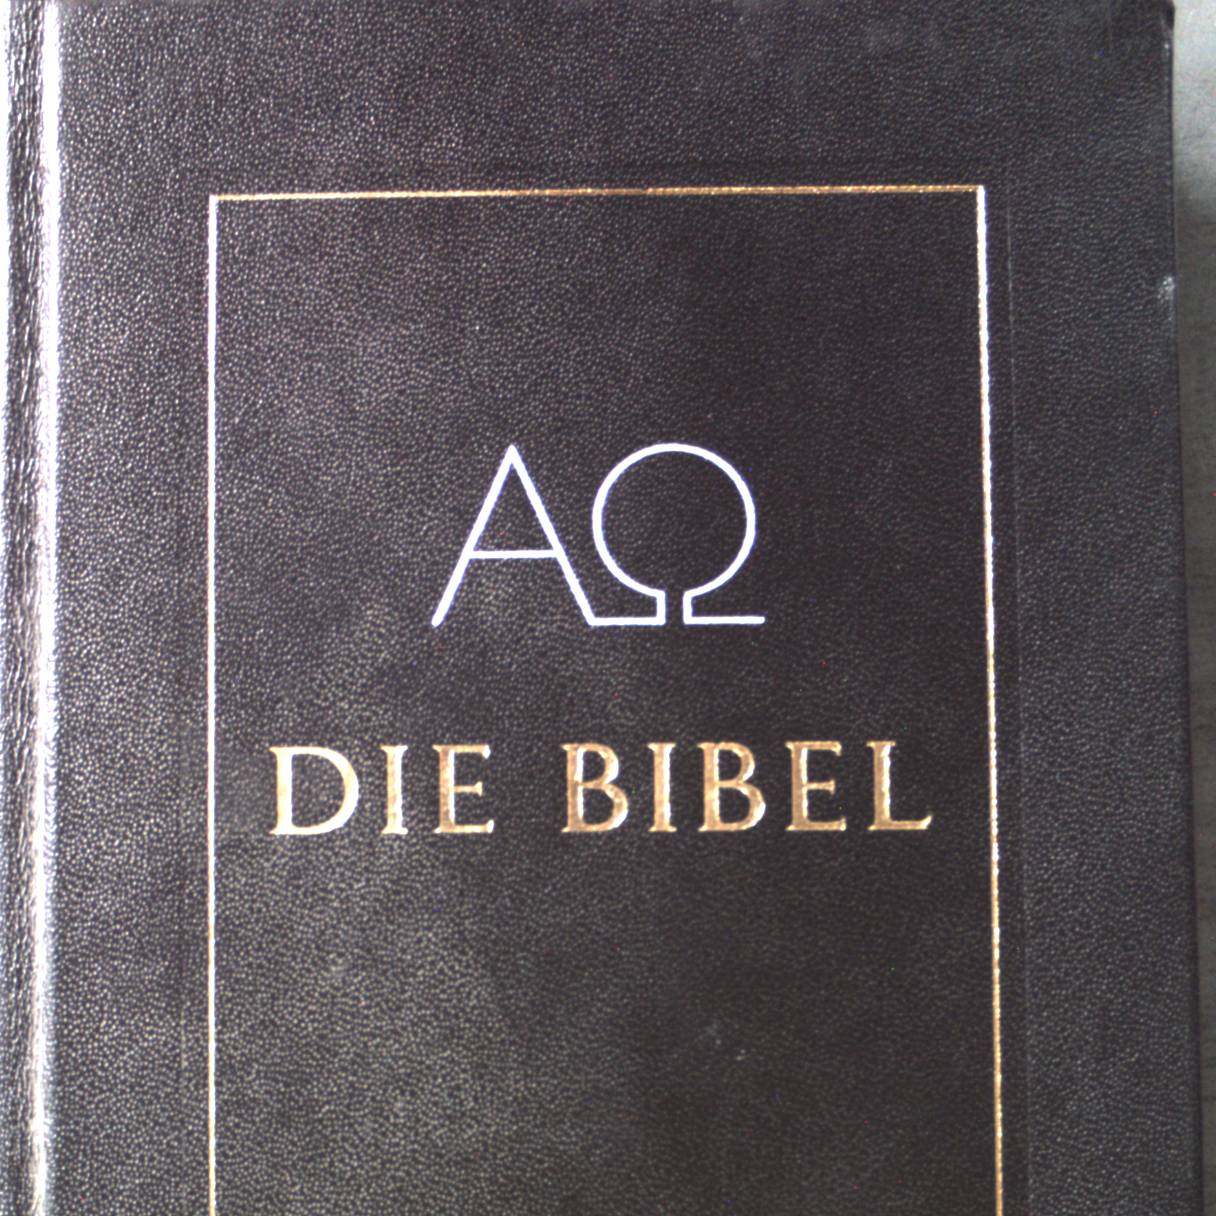 Die Bibel : die Heilige Schrift des Alten und Neuen Bundes - Schweitzer, Claus